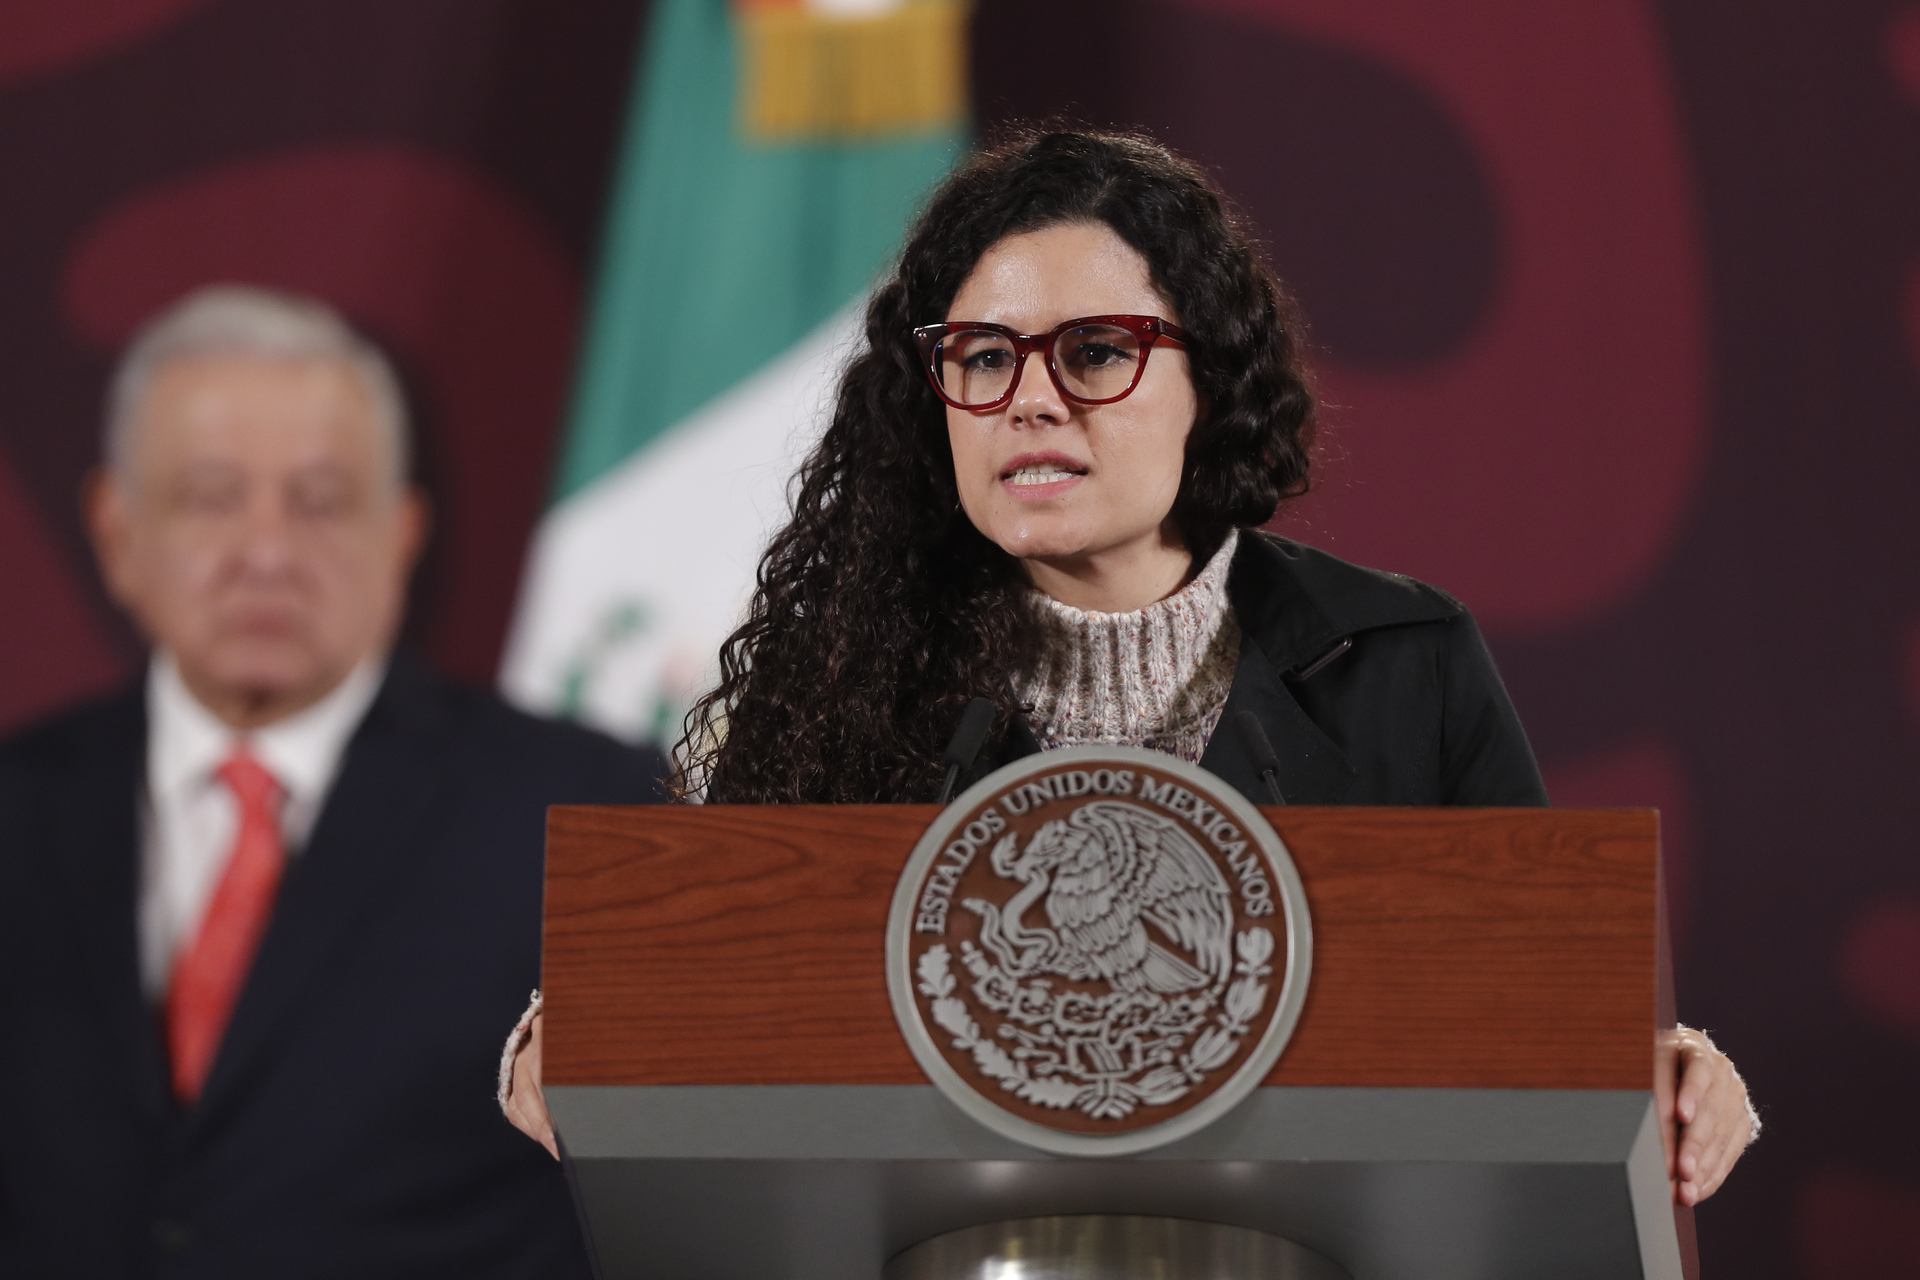 Luisa María Alcalde, secretaria de Gobernación, aborda la reforma propuesta para el Poder Judicial, enfatizando la importancia de independencia y transparencia en la impartición de justicia en México.